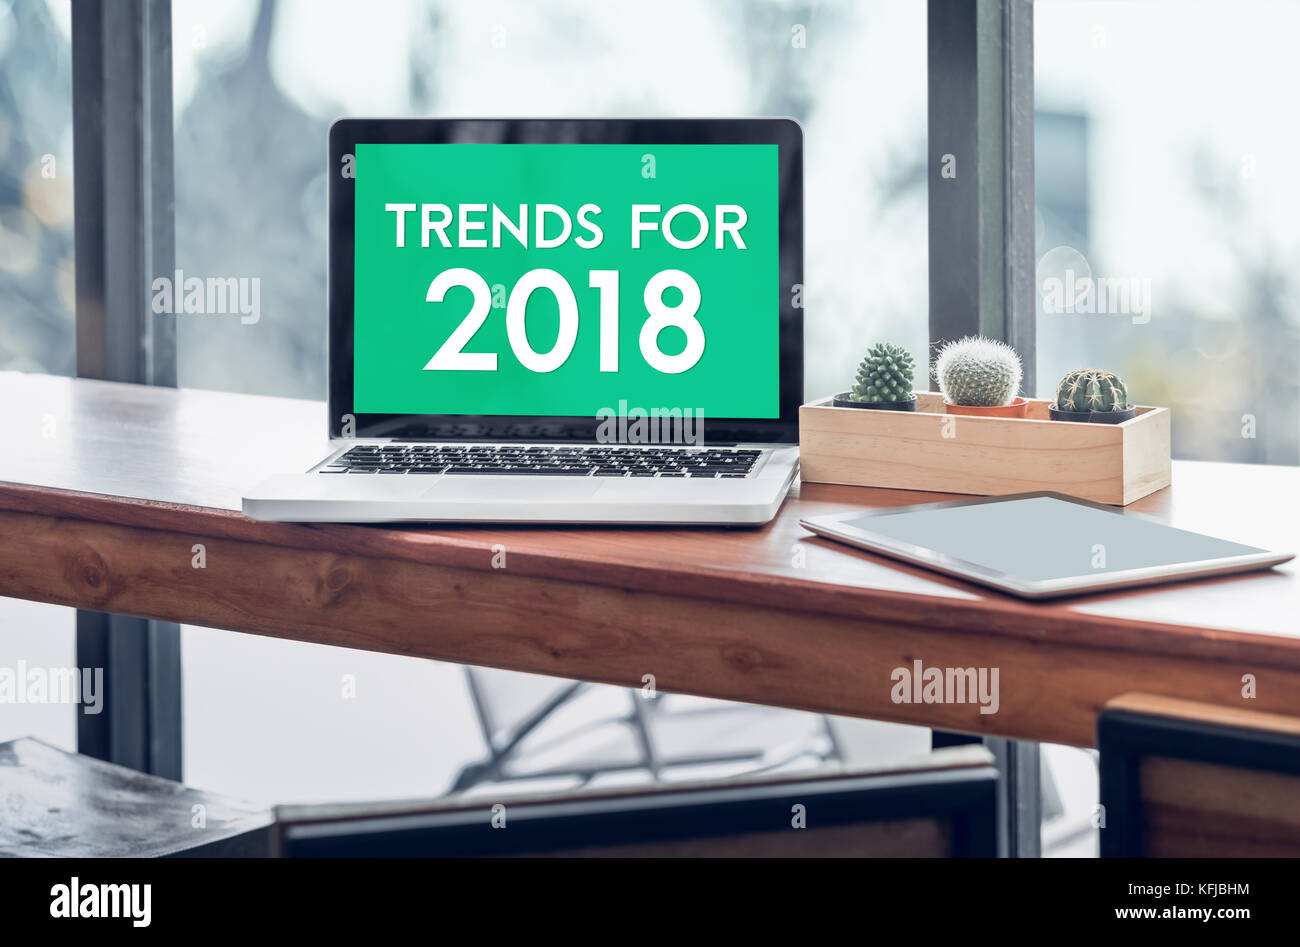 Trends für 2018 Wort in Laptop mit Tablet auf Holz stand Tabelle im Fenster mit unscharfen Hintergrund, digitale Wirtschaft oder Marketing trendin Stockfoto